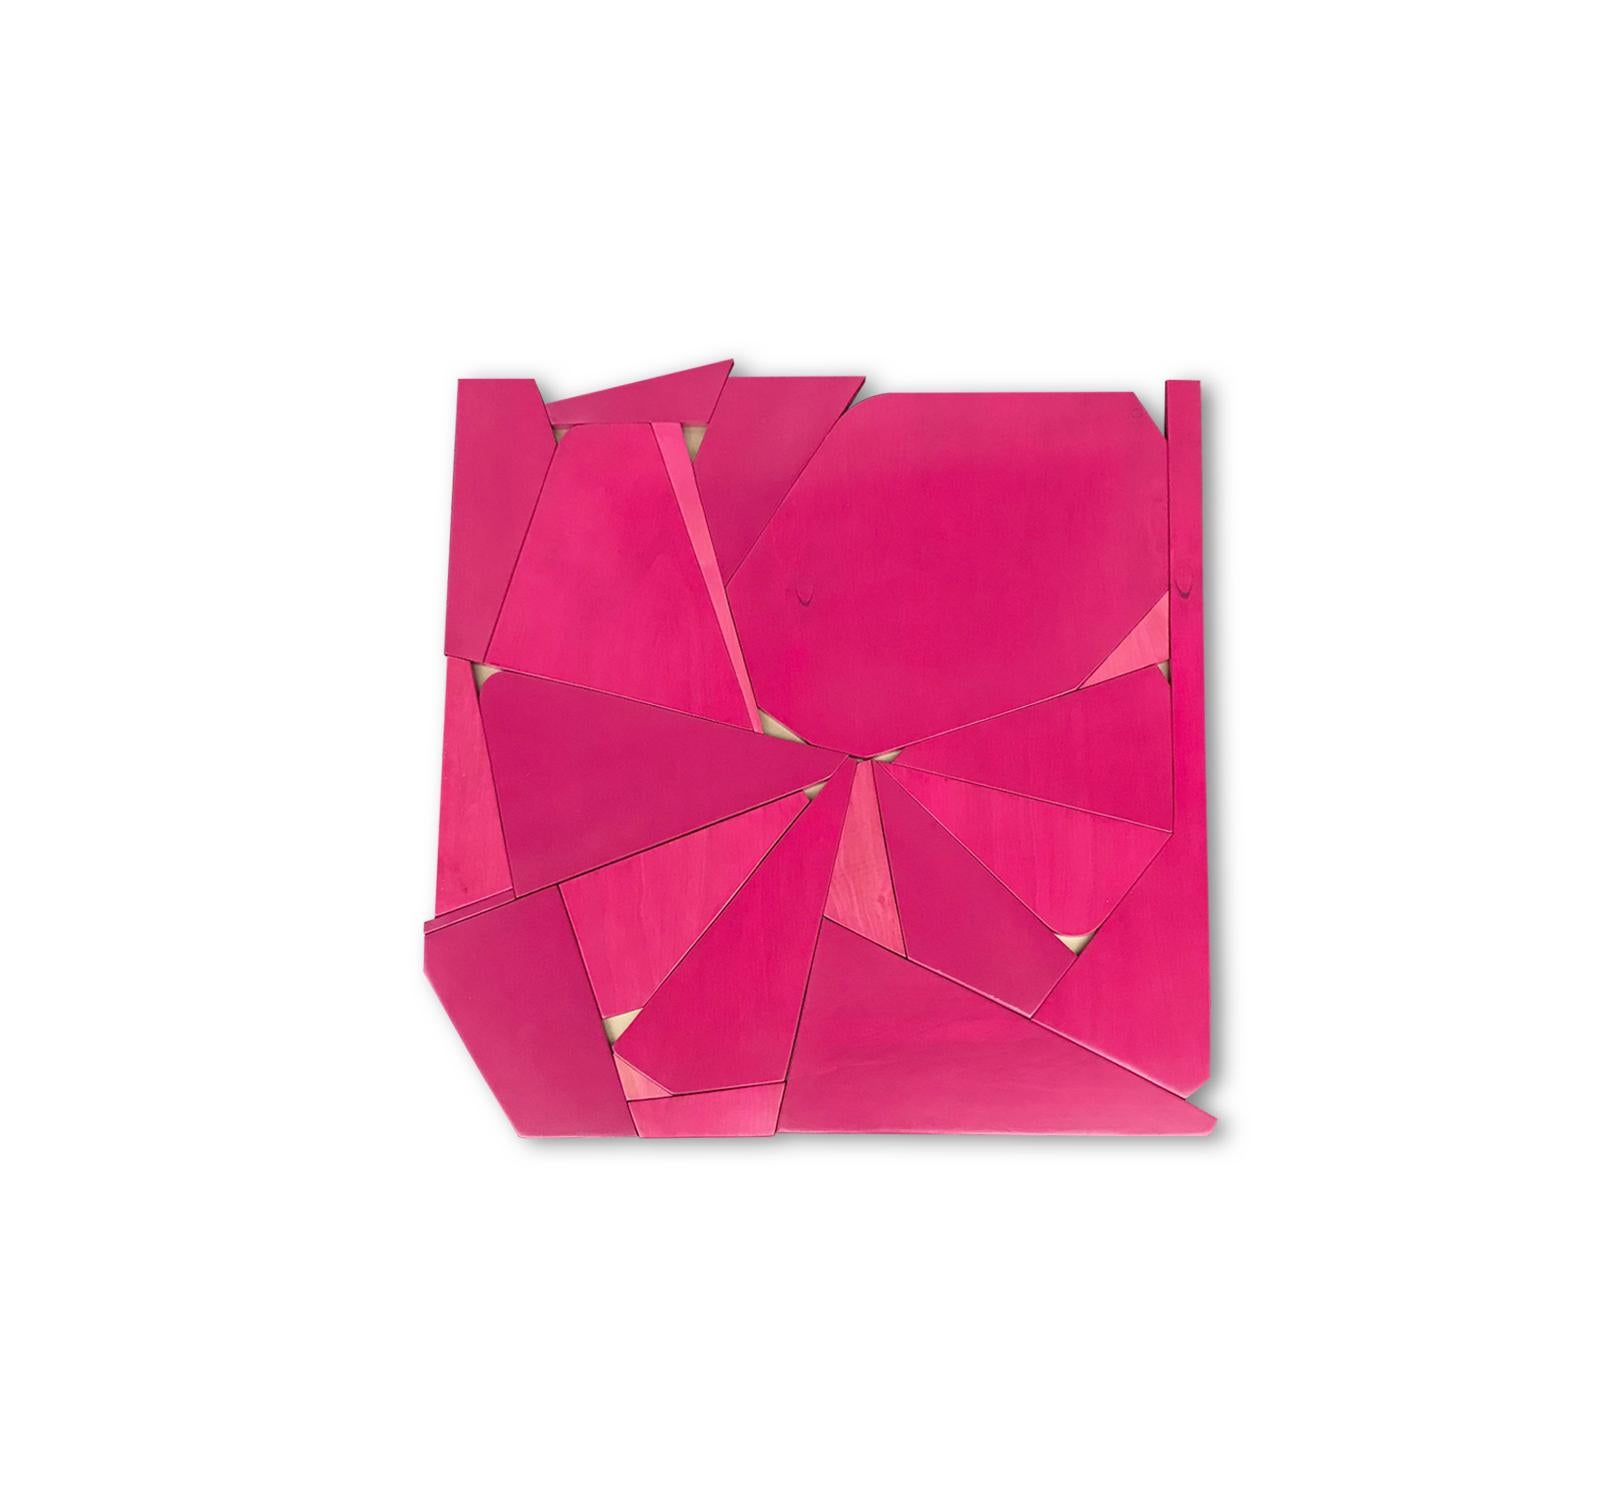 Pinwheel (mangenta modern abstract wall sculpture minimal geometric design pink) - Sculpture by Scott Troxel